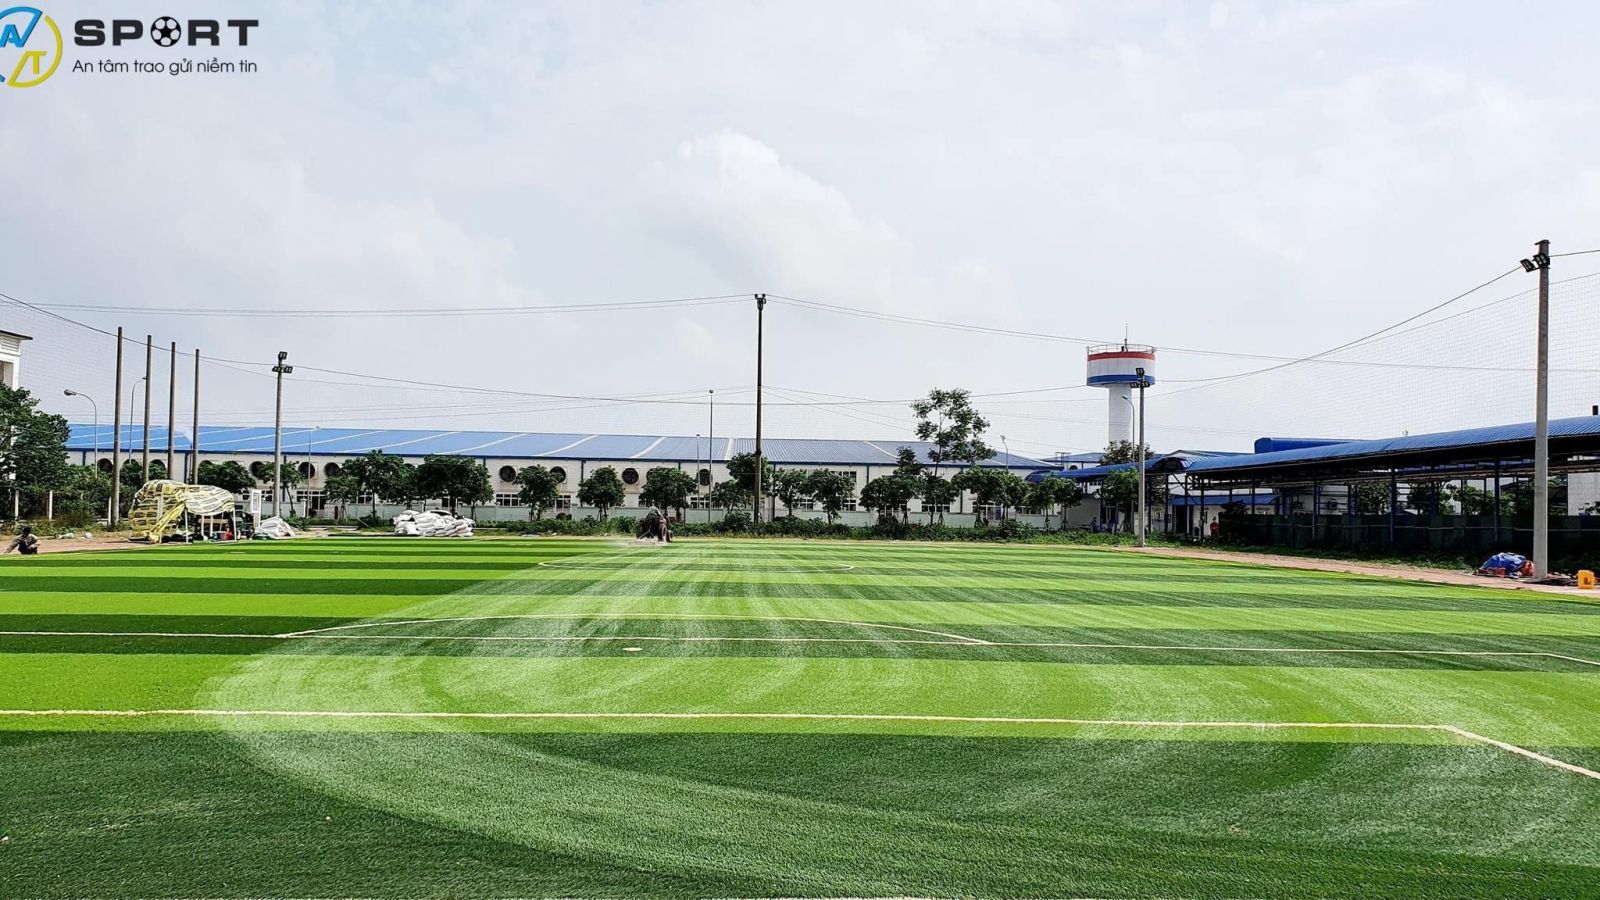 Thi công sân bóng đá cỏ nhân tạo ở Hà Nam